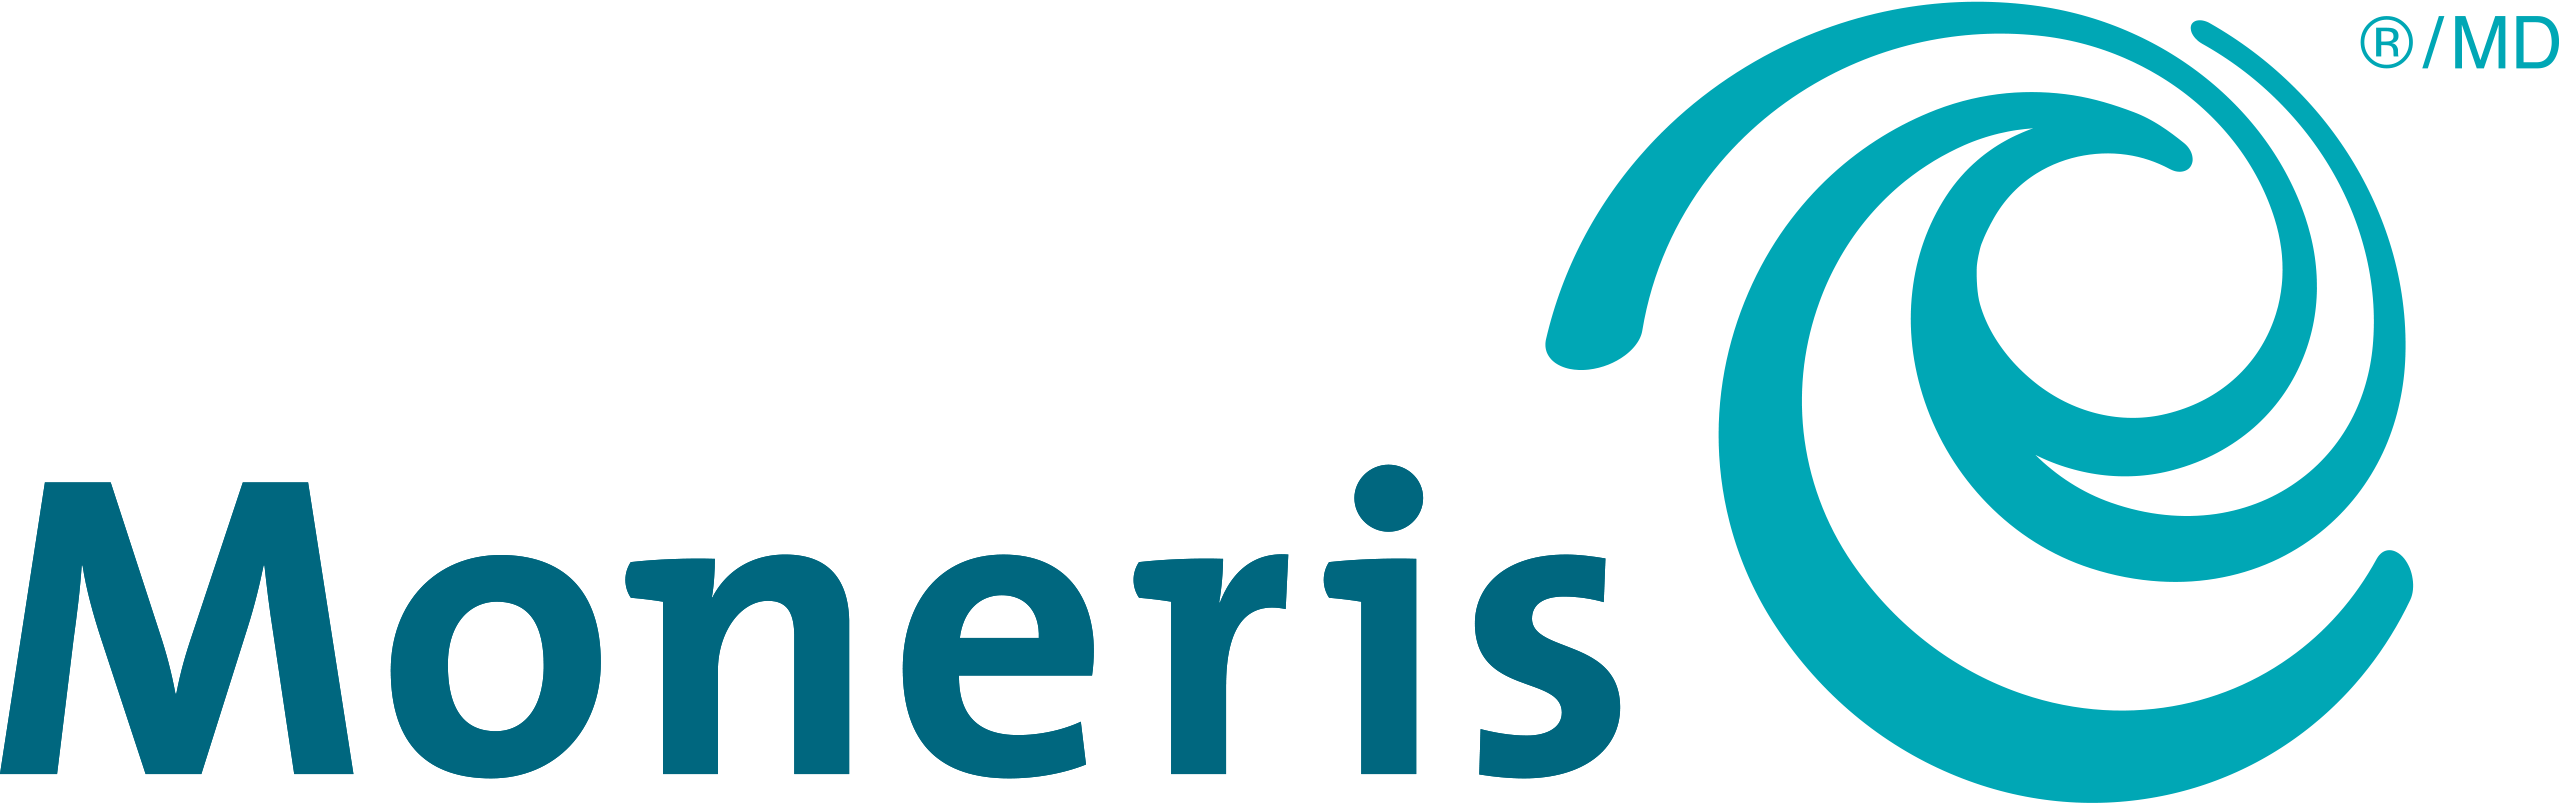 Moneris Company Logo